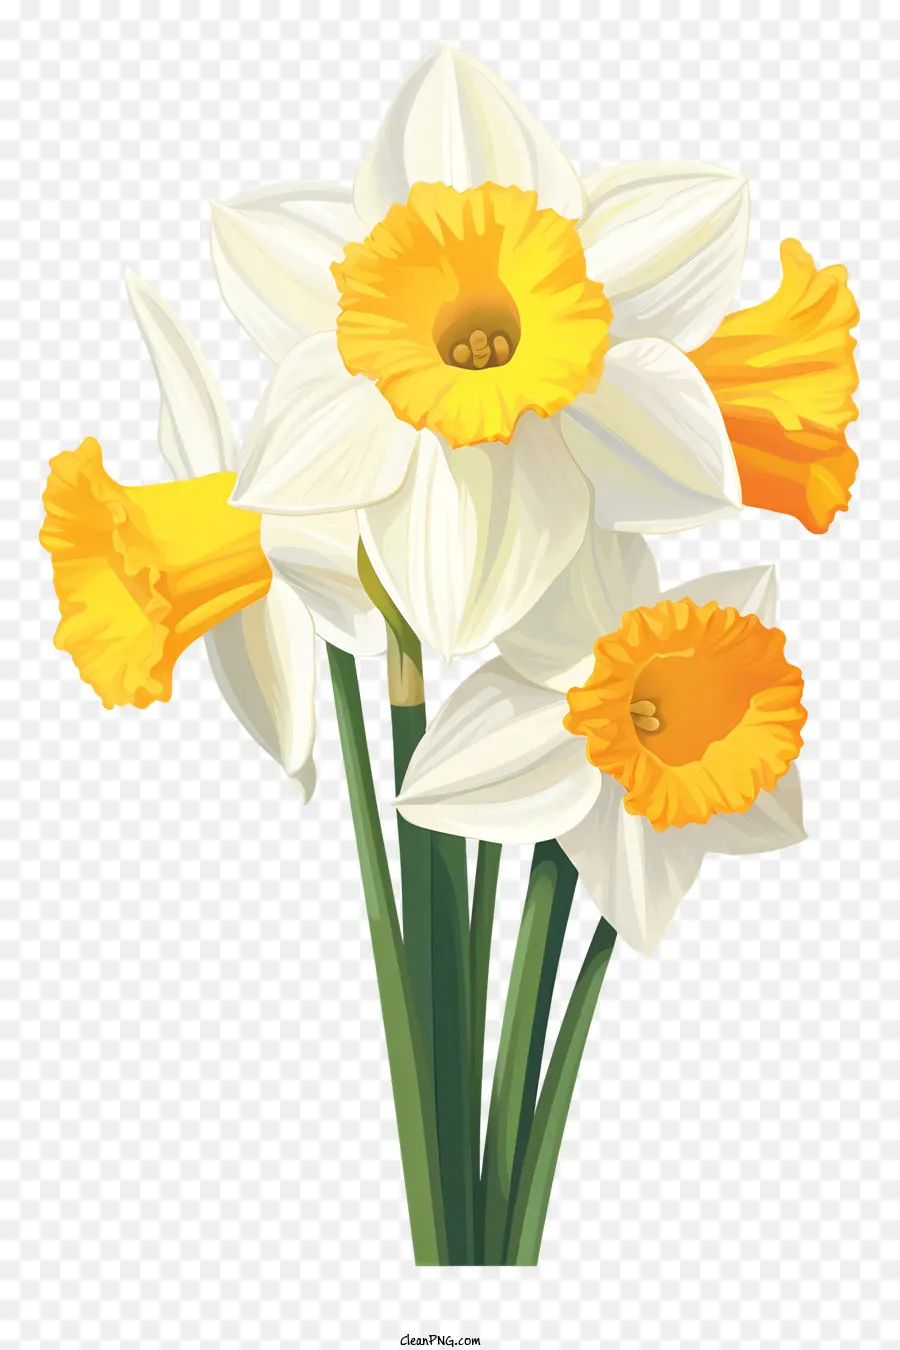 Frühlingsblumen - Weiße Narzissen mit gelben Zentren in der Vase